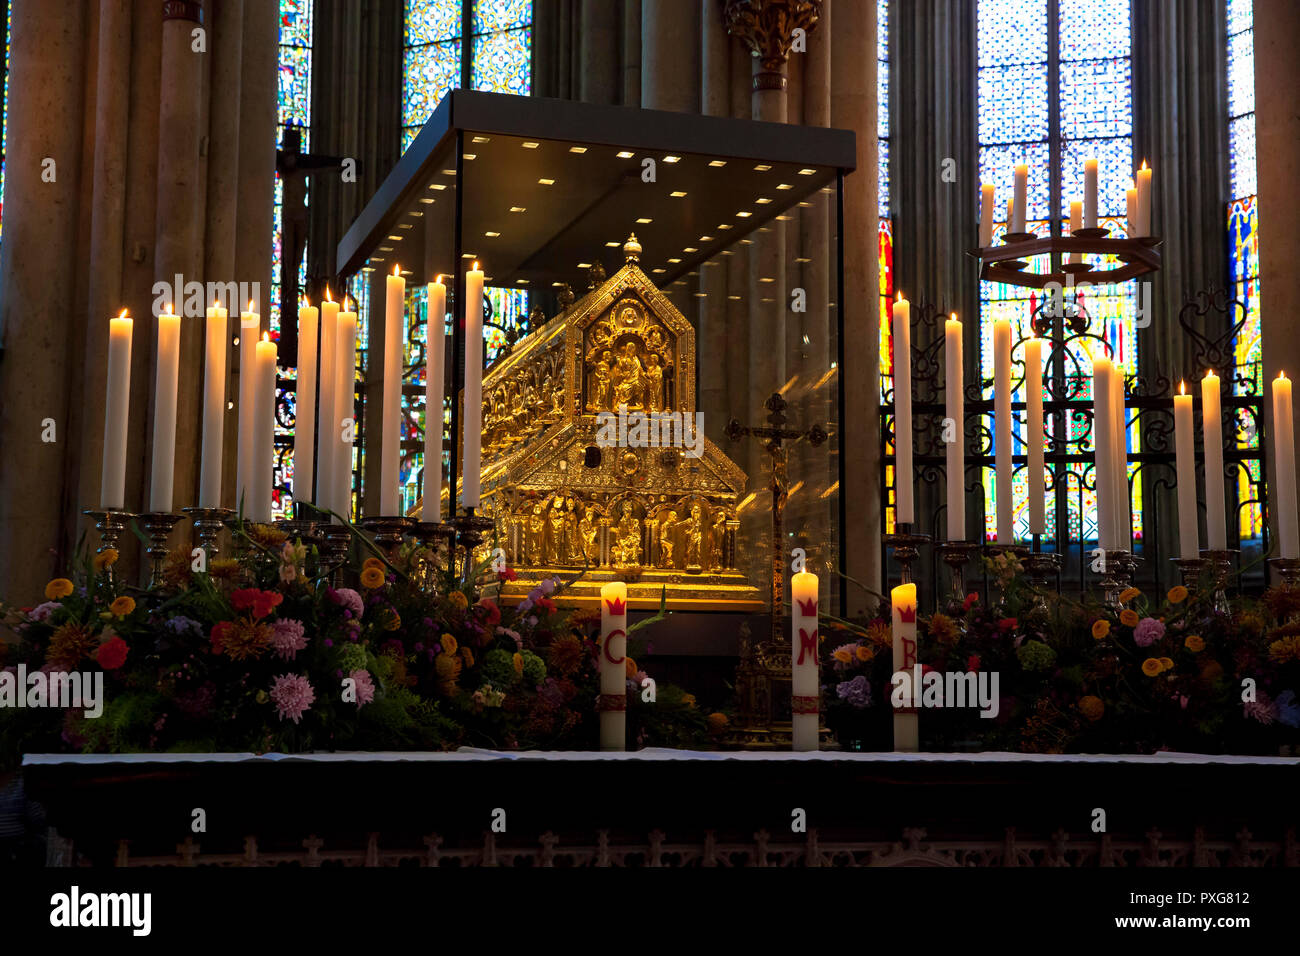 Der Schrein der Heiligen Drei Könige am Dom, Köln, Deutschland der Dreikoenigsschrein im Dom, Köln, Deutschland. Stockfoto